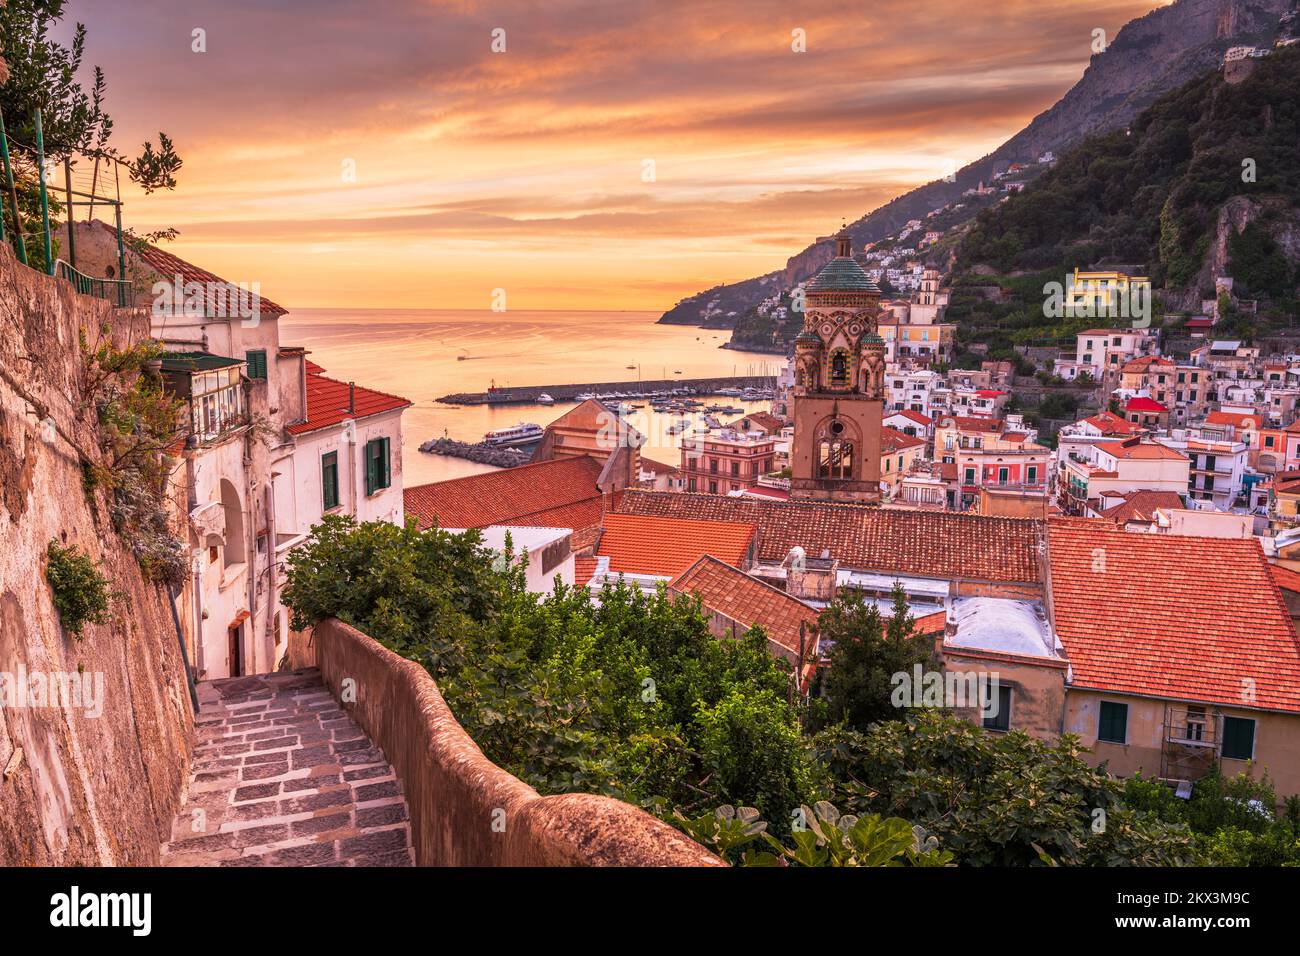 Amalfi, Italy on the Amalfi coast at dusk. Stock Photo